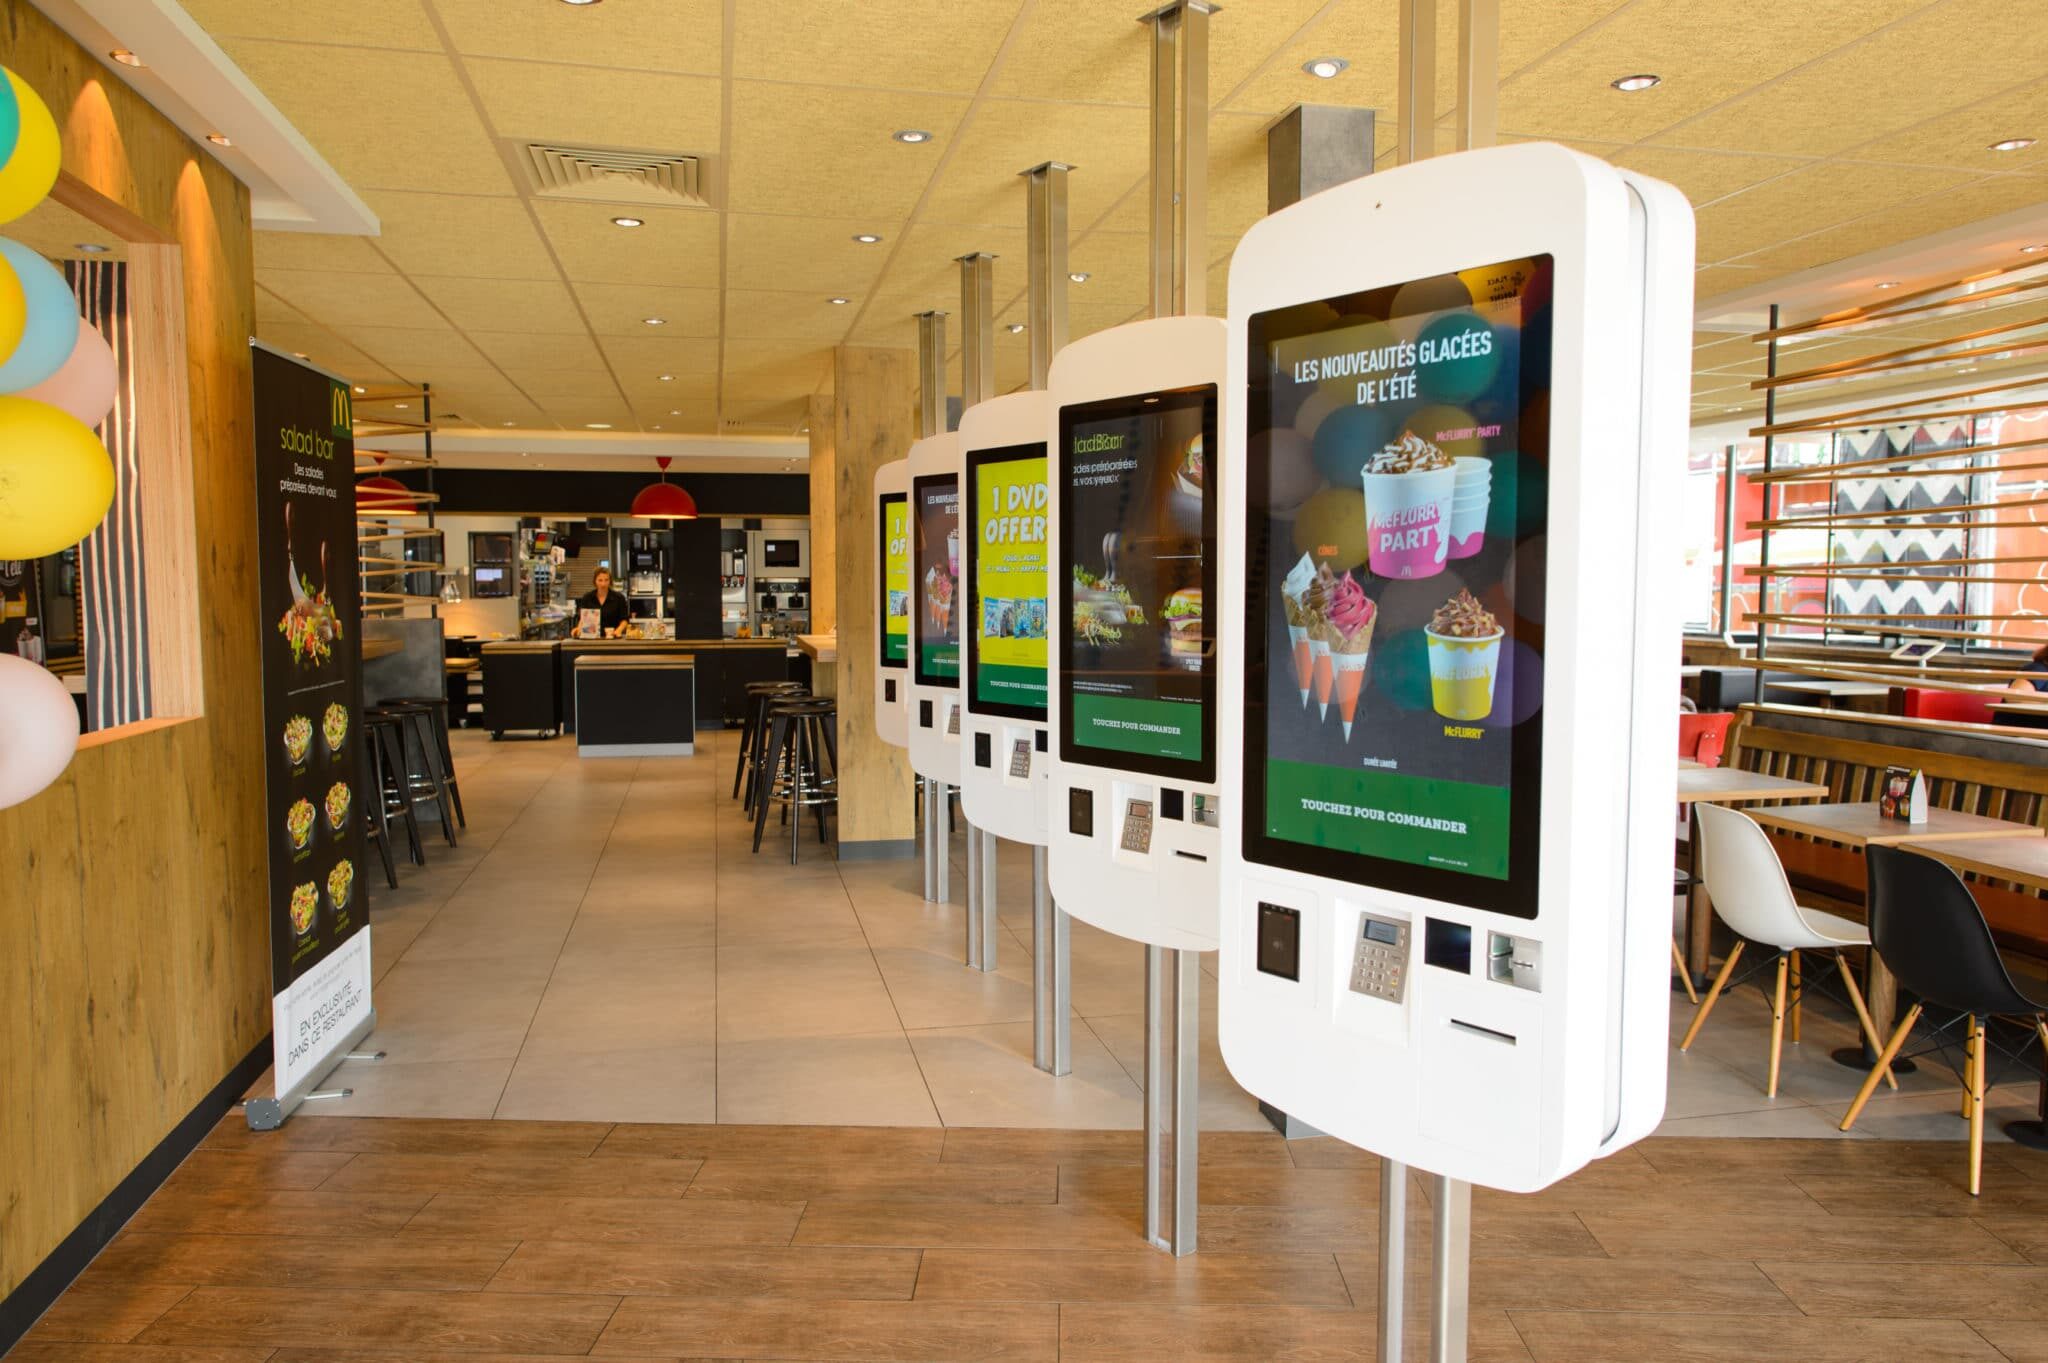 LA VILLE-AUX-DAMES, FRANCE - 12 août 2015: l'intérieur du restaurant McDonald's. McDonald's est la plus grande chaîne de restauration rapide de hamburgers au monde, fondée aux États-Unis.